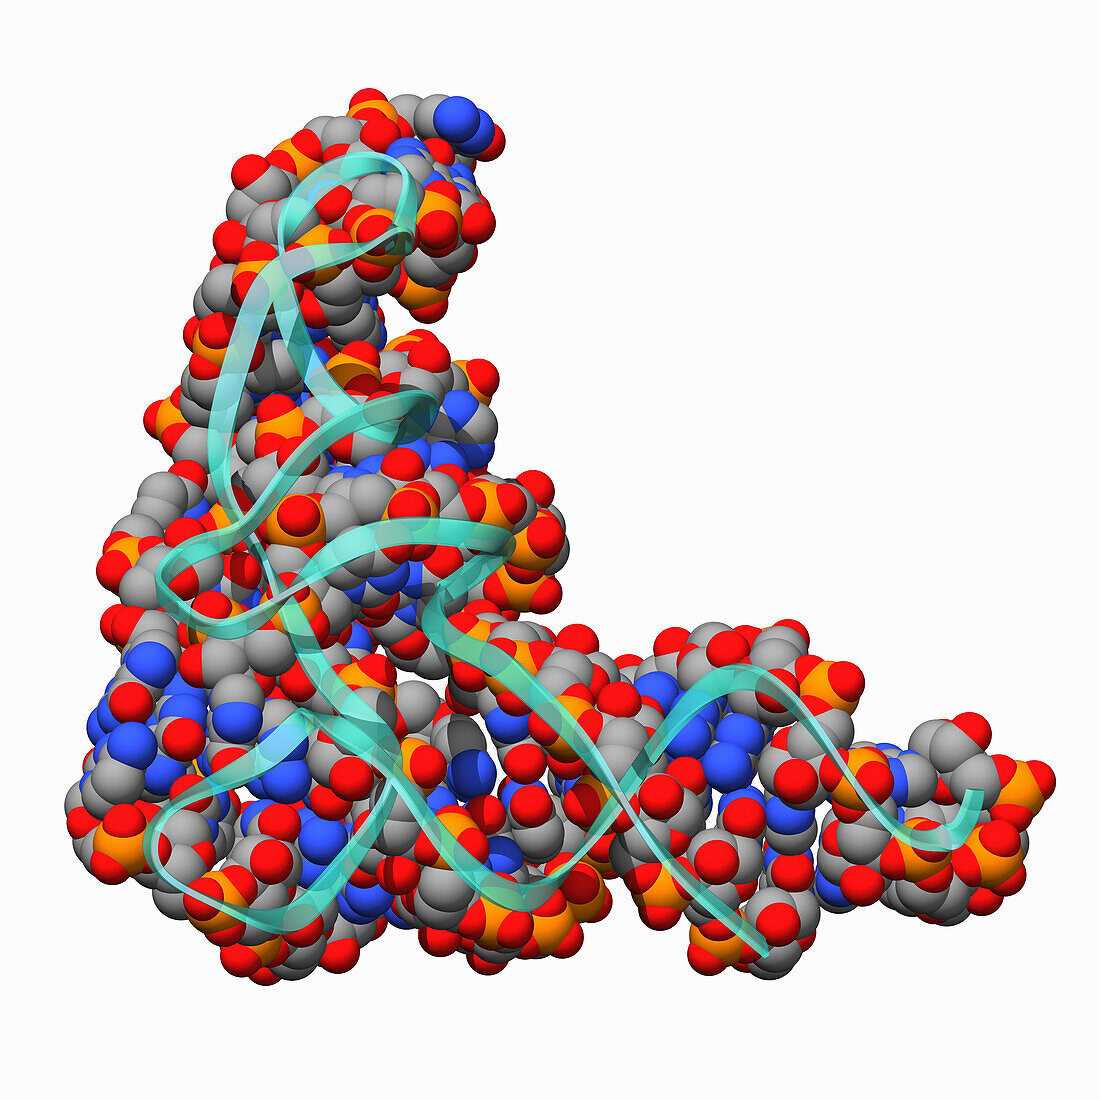 Human transfer RNA, molecular model